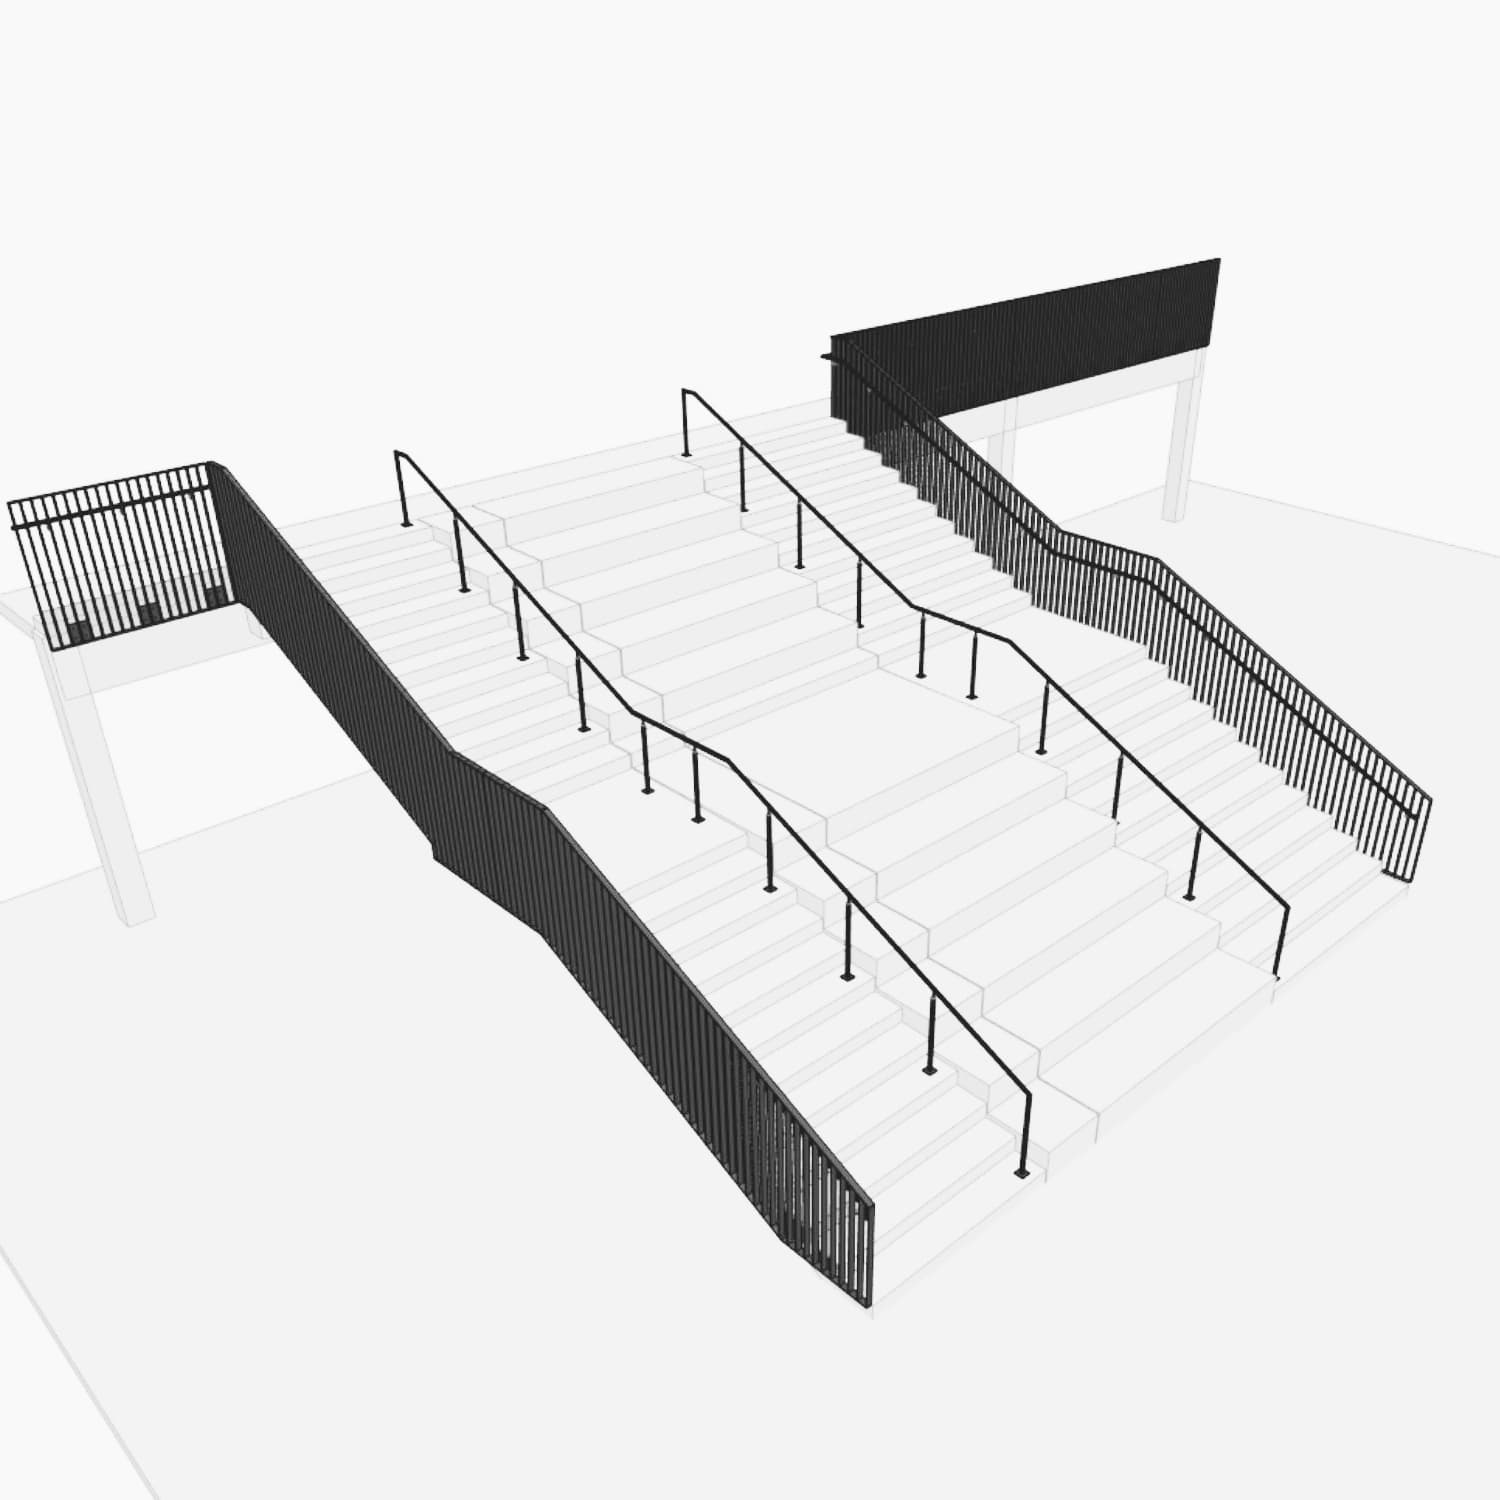 Metallbau: Treppe mit Brüstungsgeländer bauen